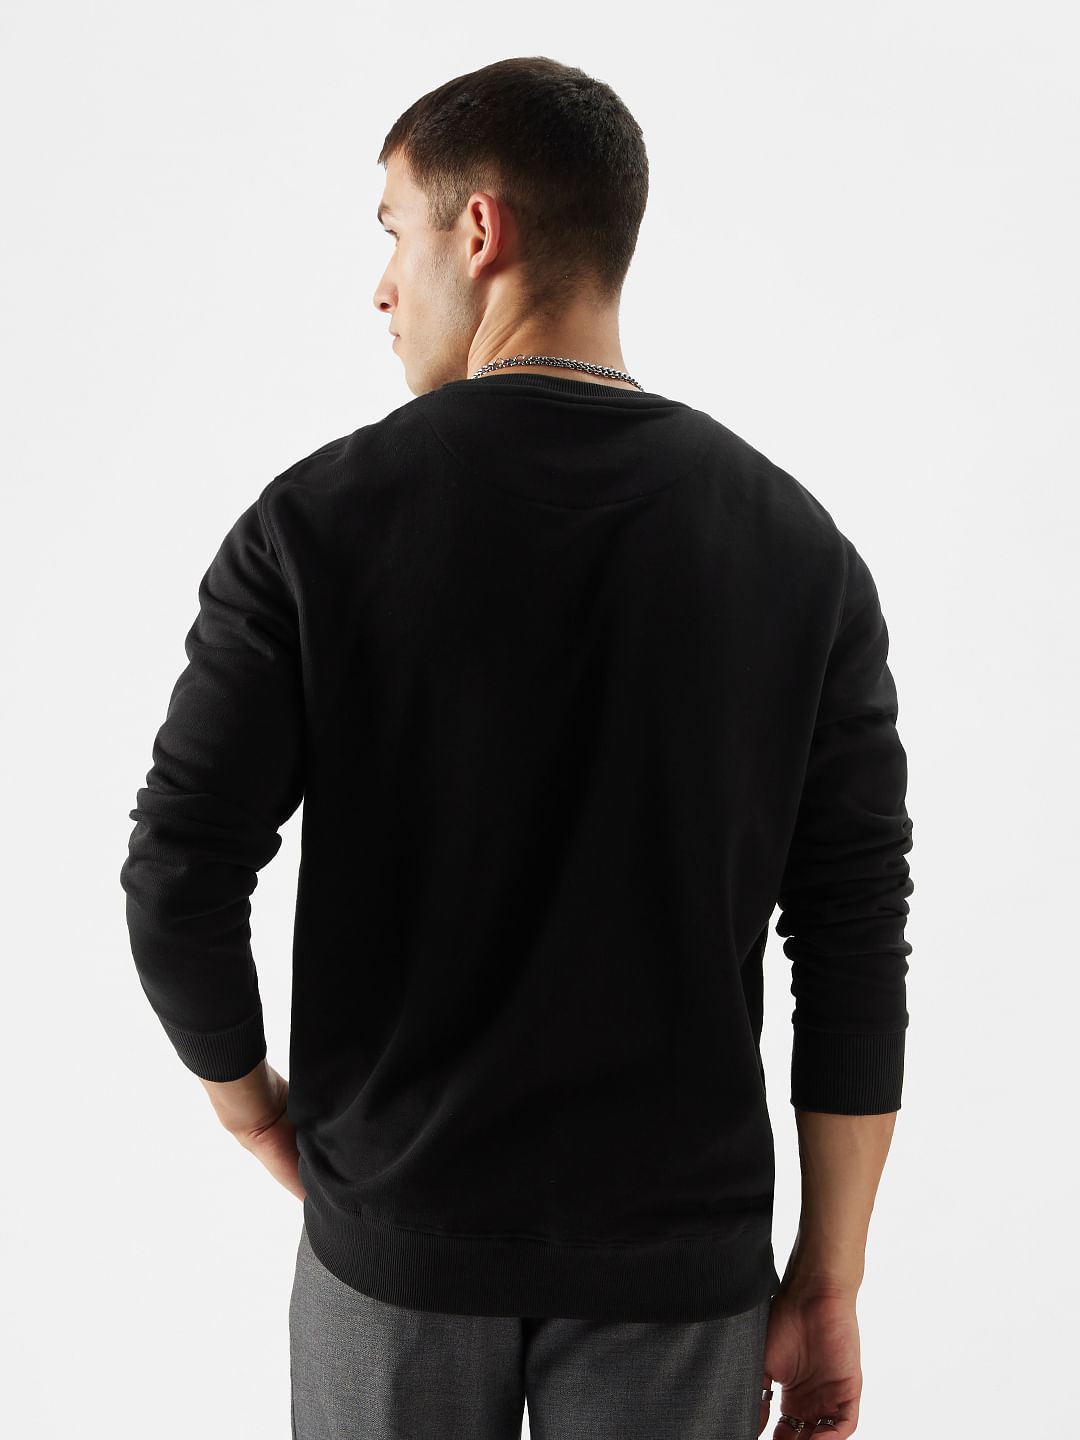 Buy TSS Originals: Black Men Sweatshirts Online